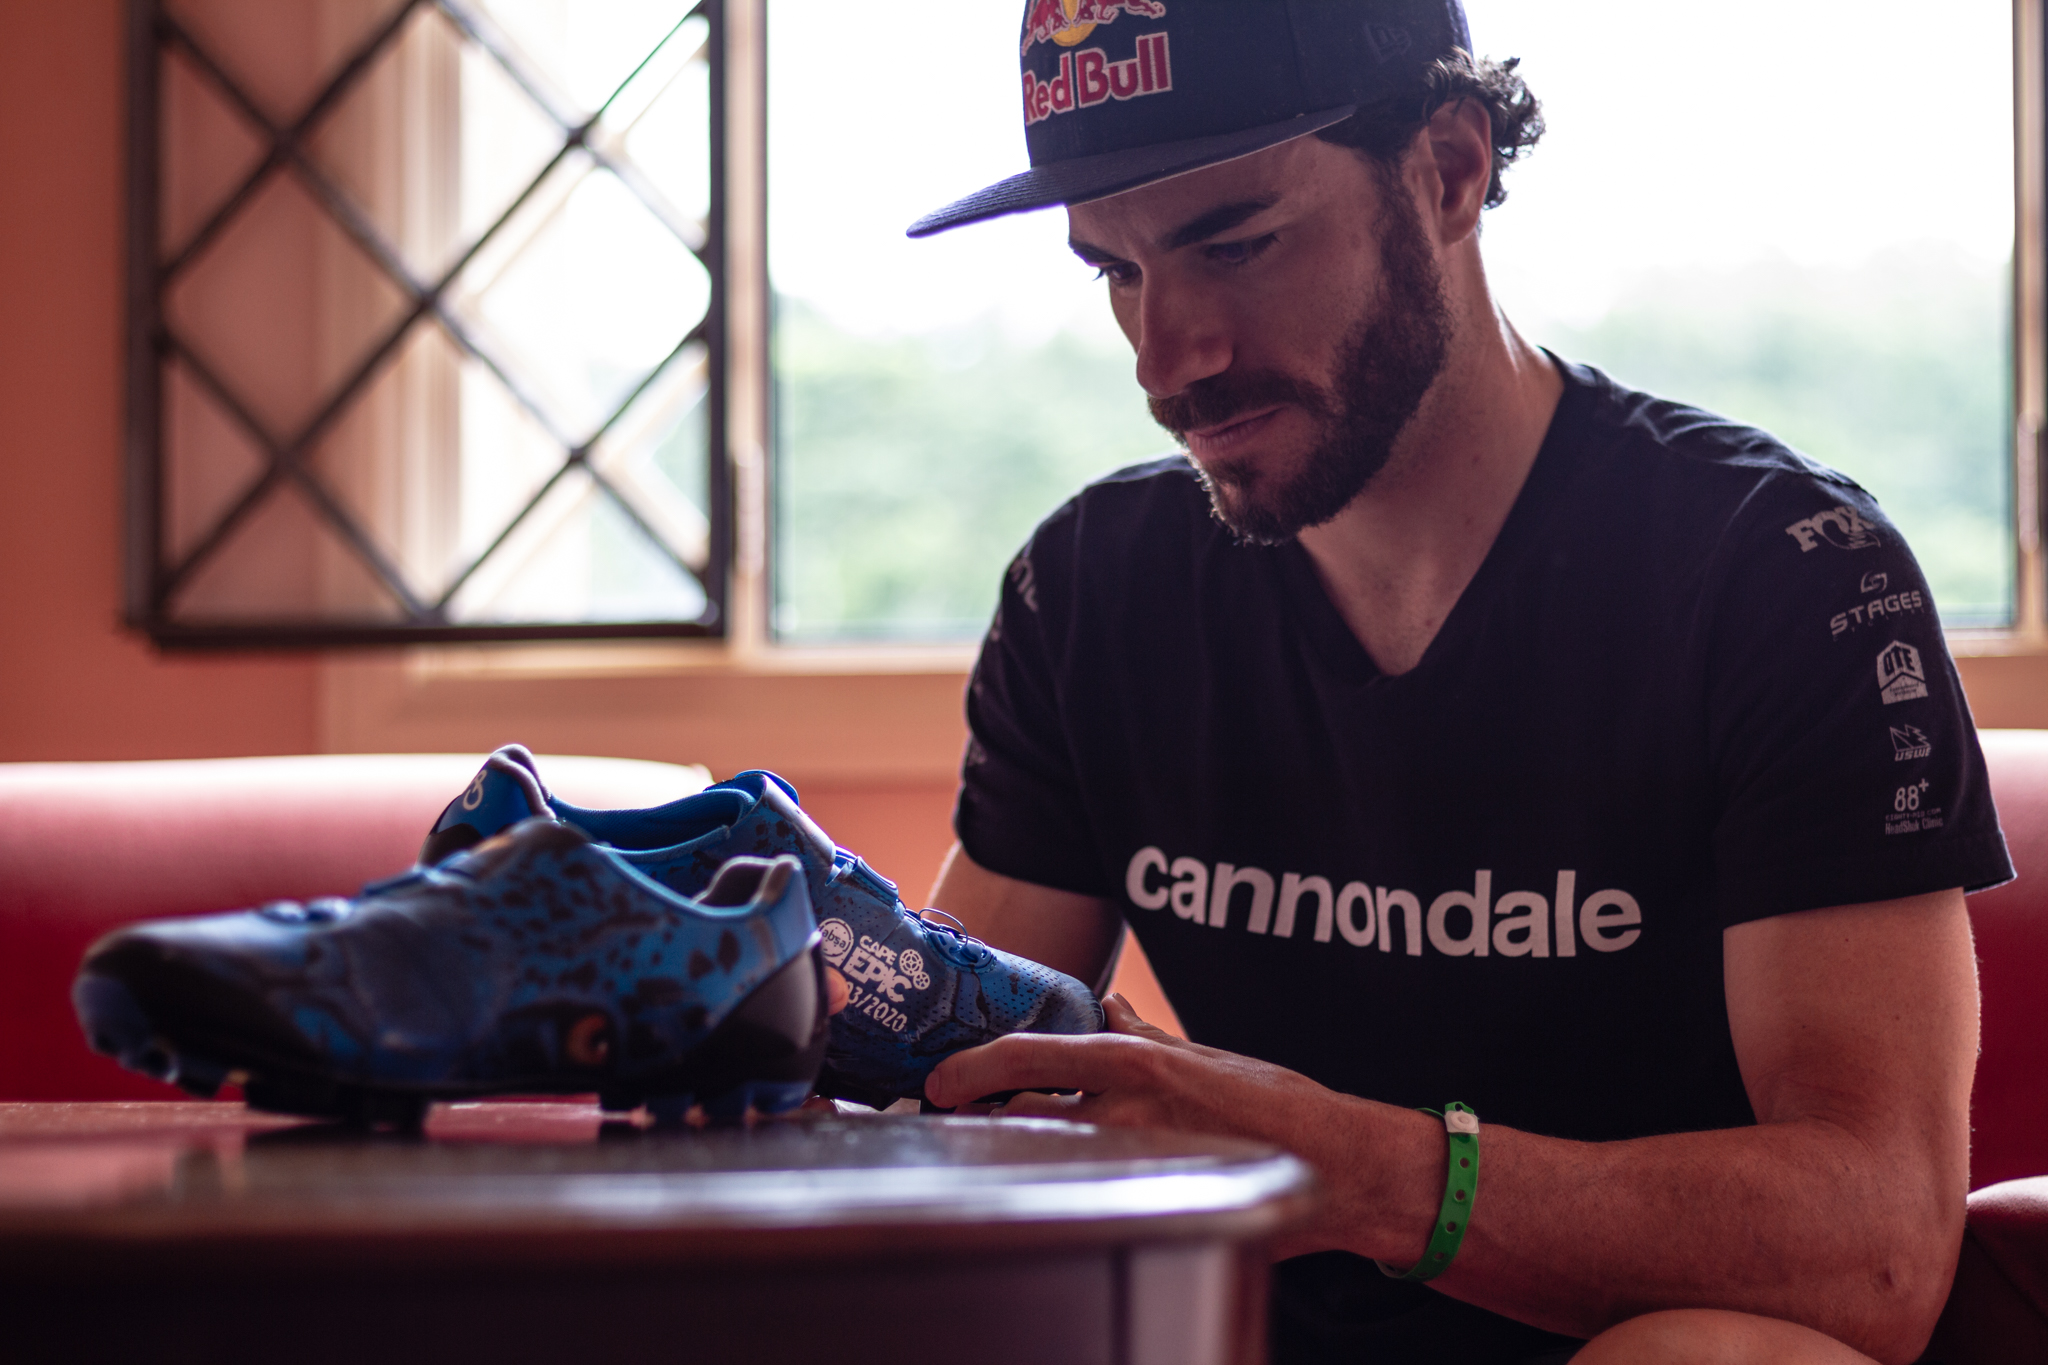 Campeão mundial Henrique Avancini lança seu projeto social com leilão de sapatilha.